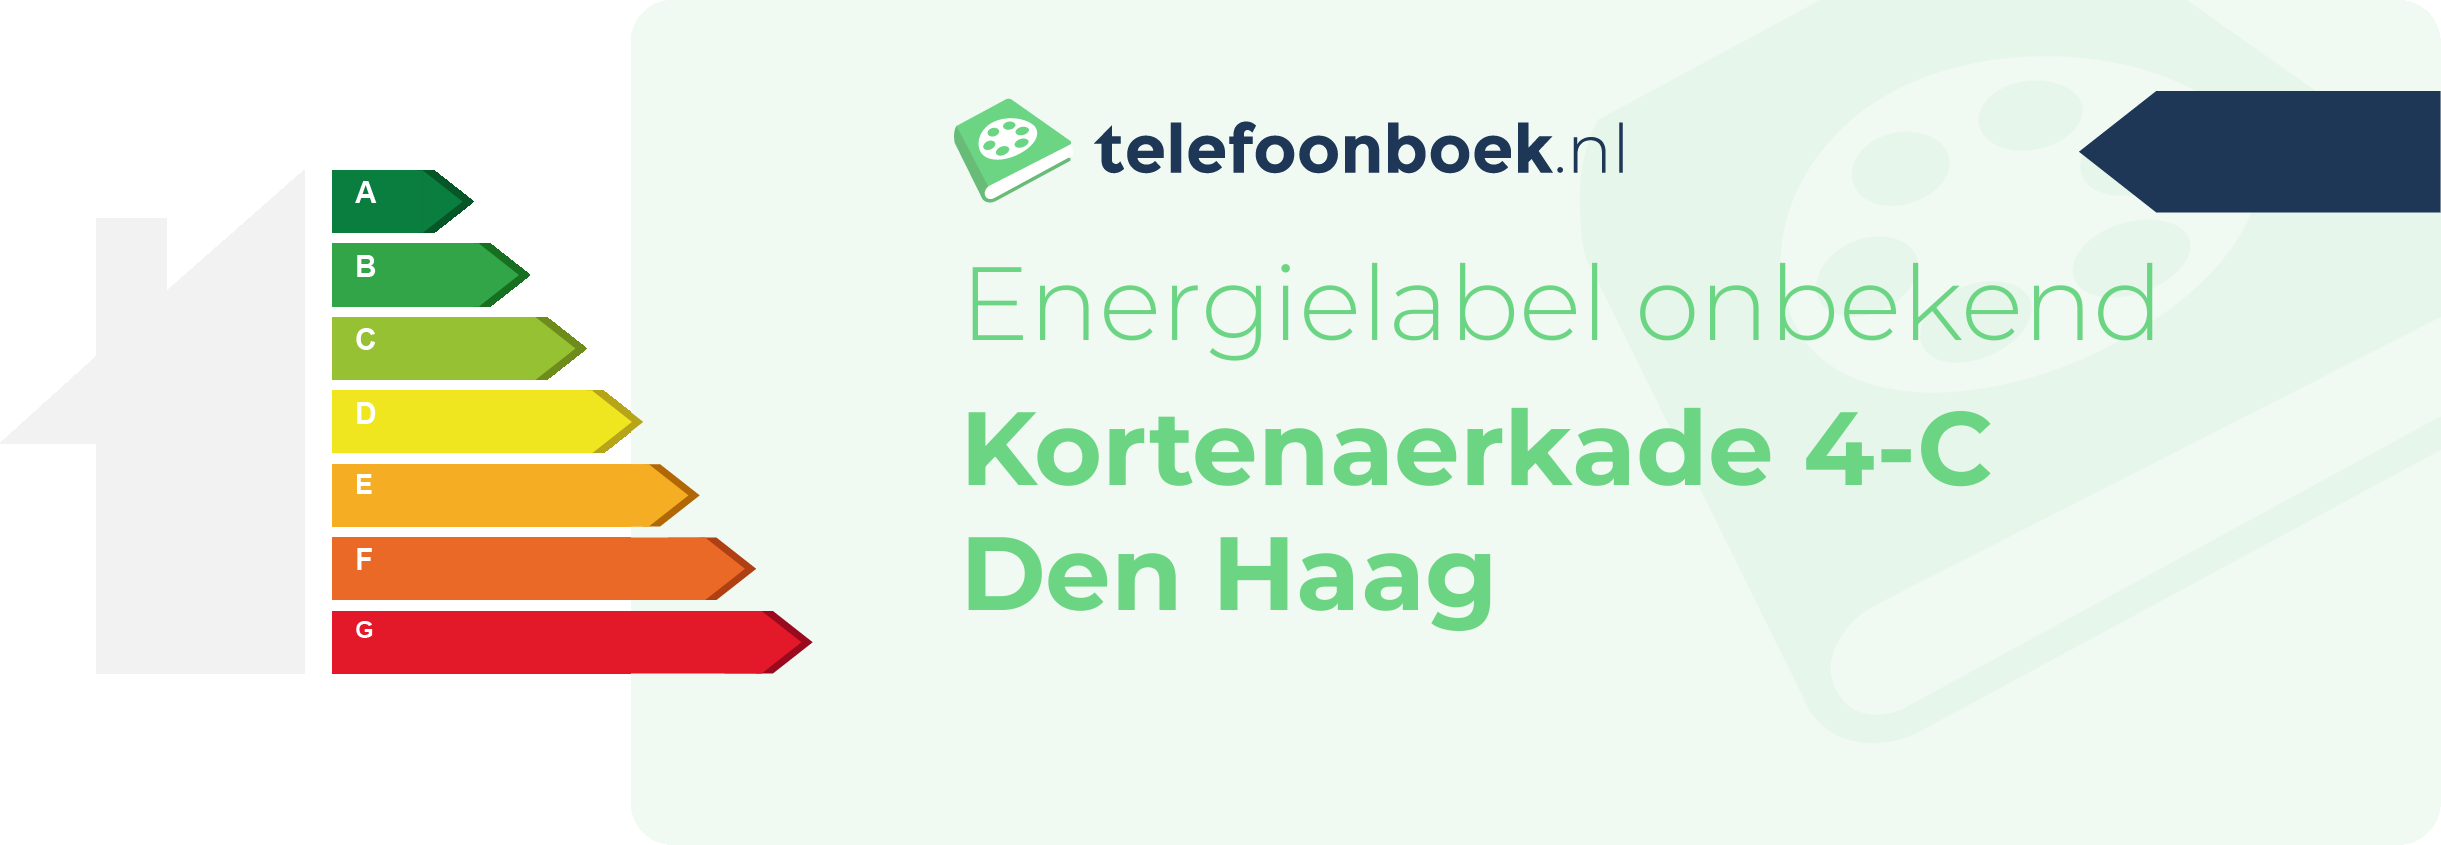 Energielabel Kortenaerkade 4-C Den Haag